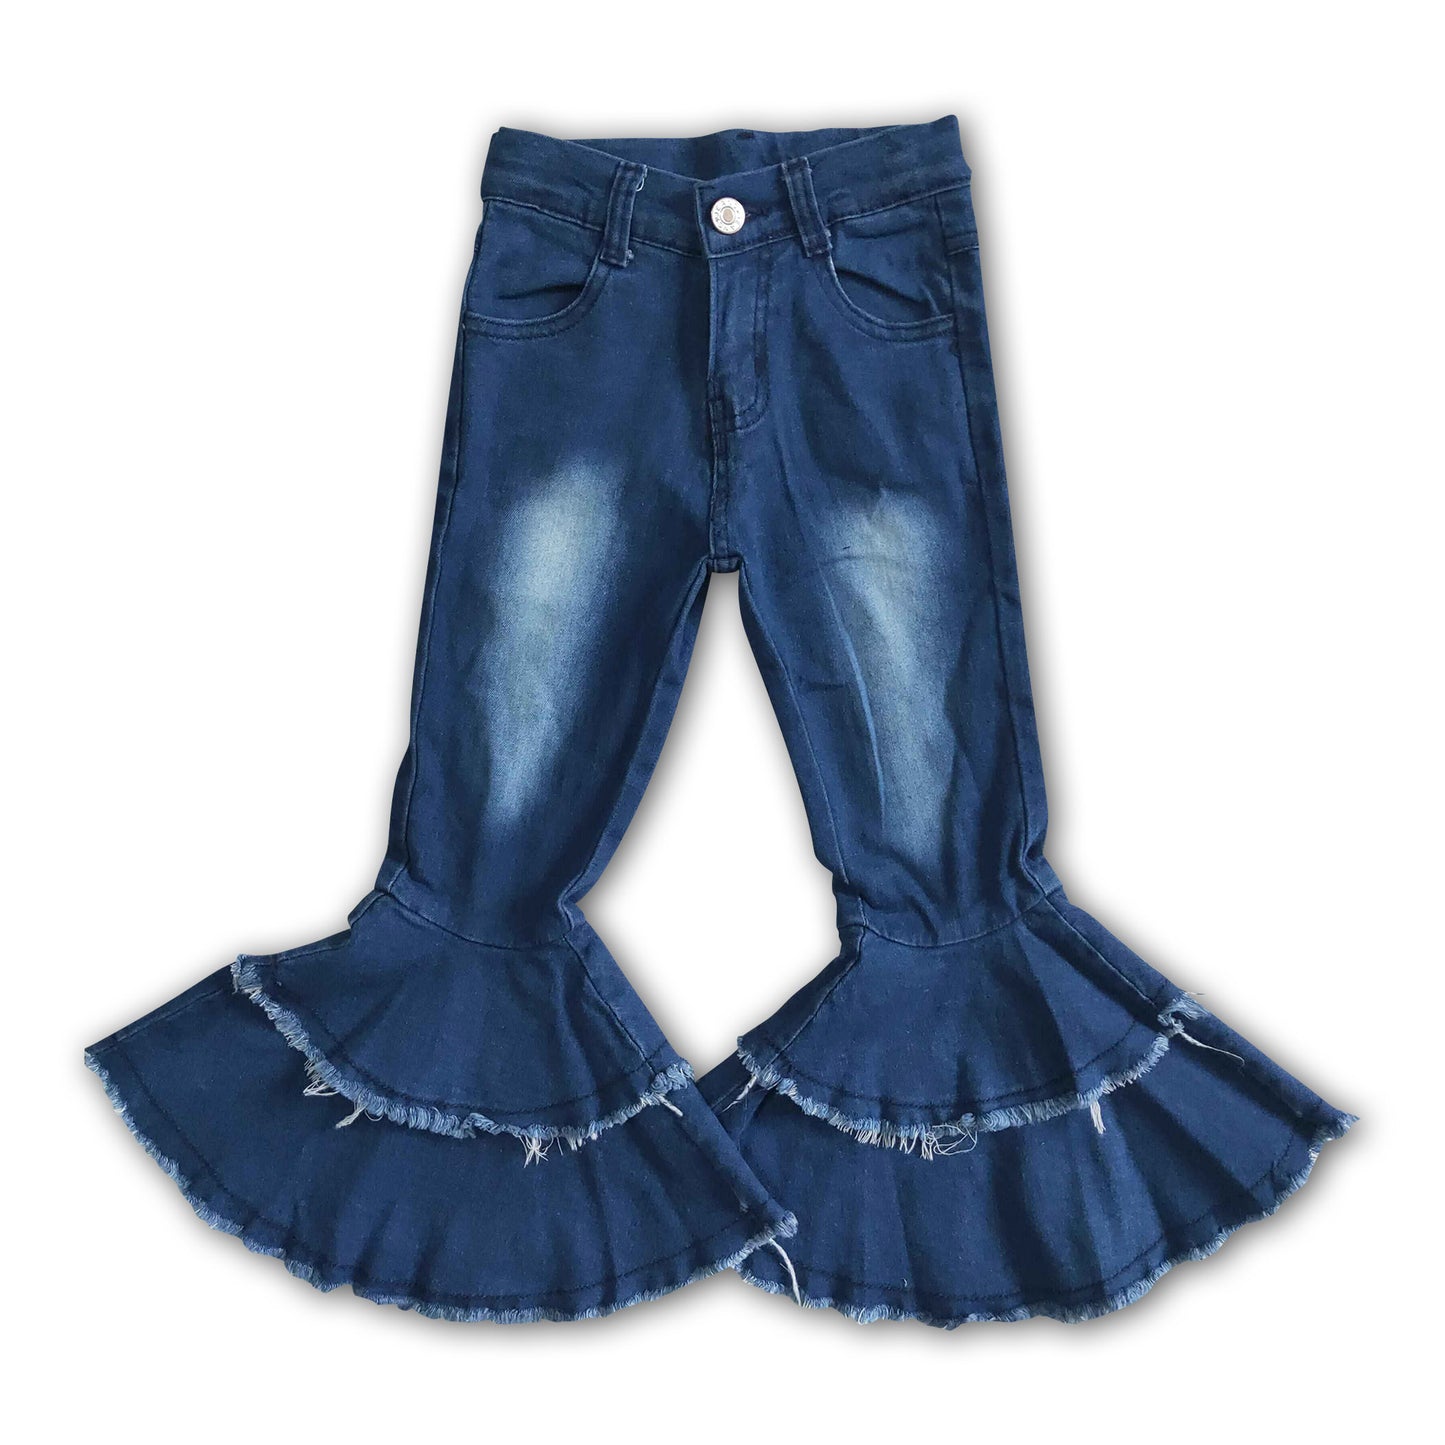 Blue denim washed kids girls jeans